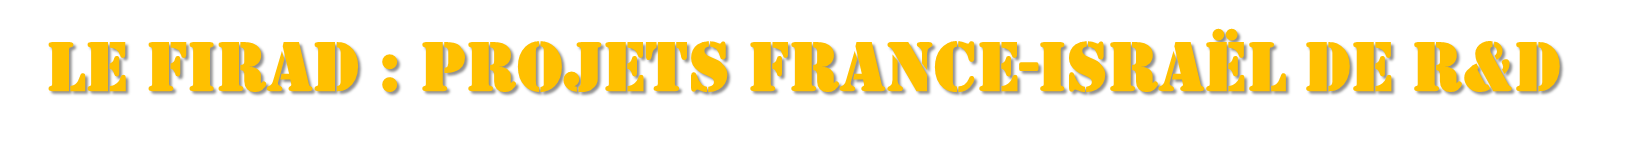 firad_logo